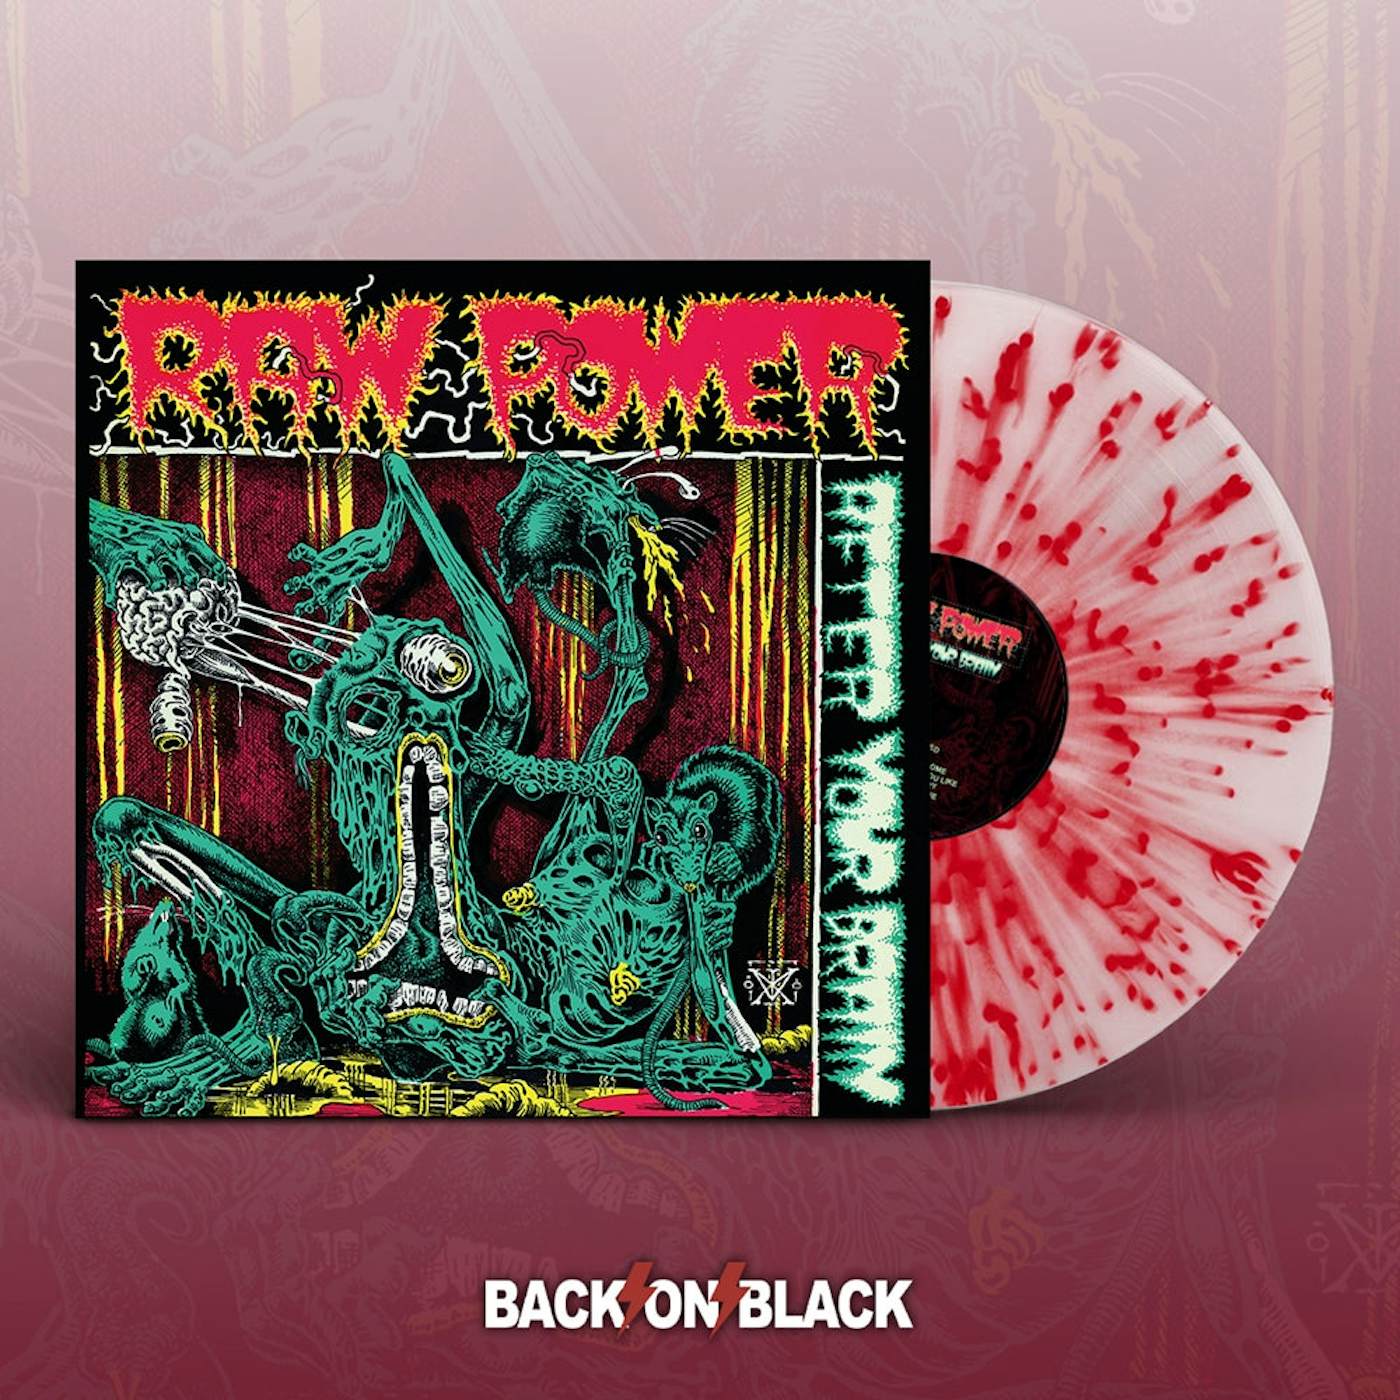  Raw Power LP - After Your Brain (White W/ Red Splatter Vinyl)